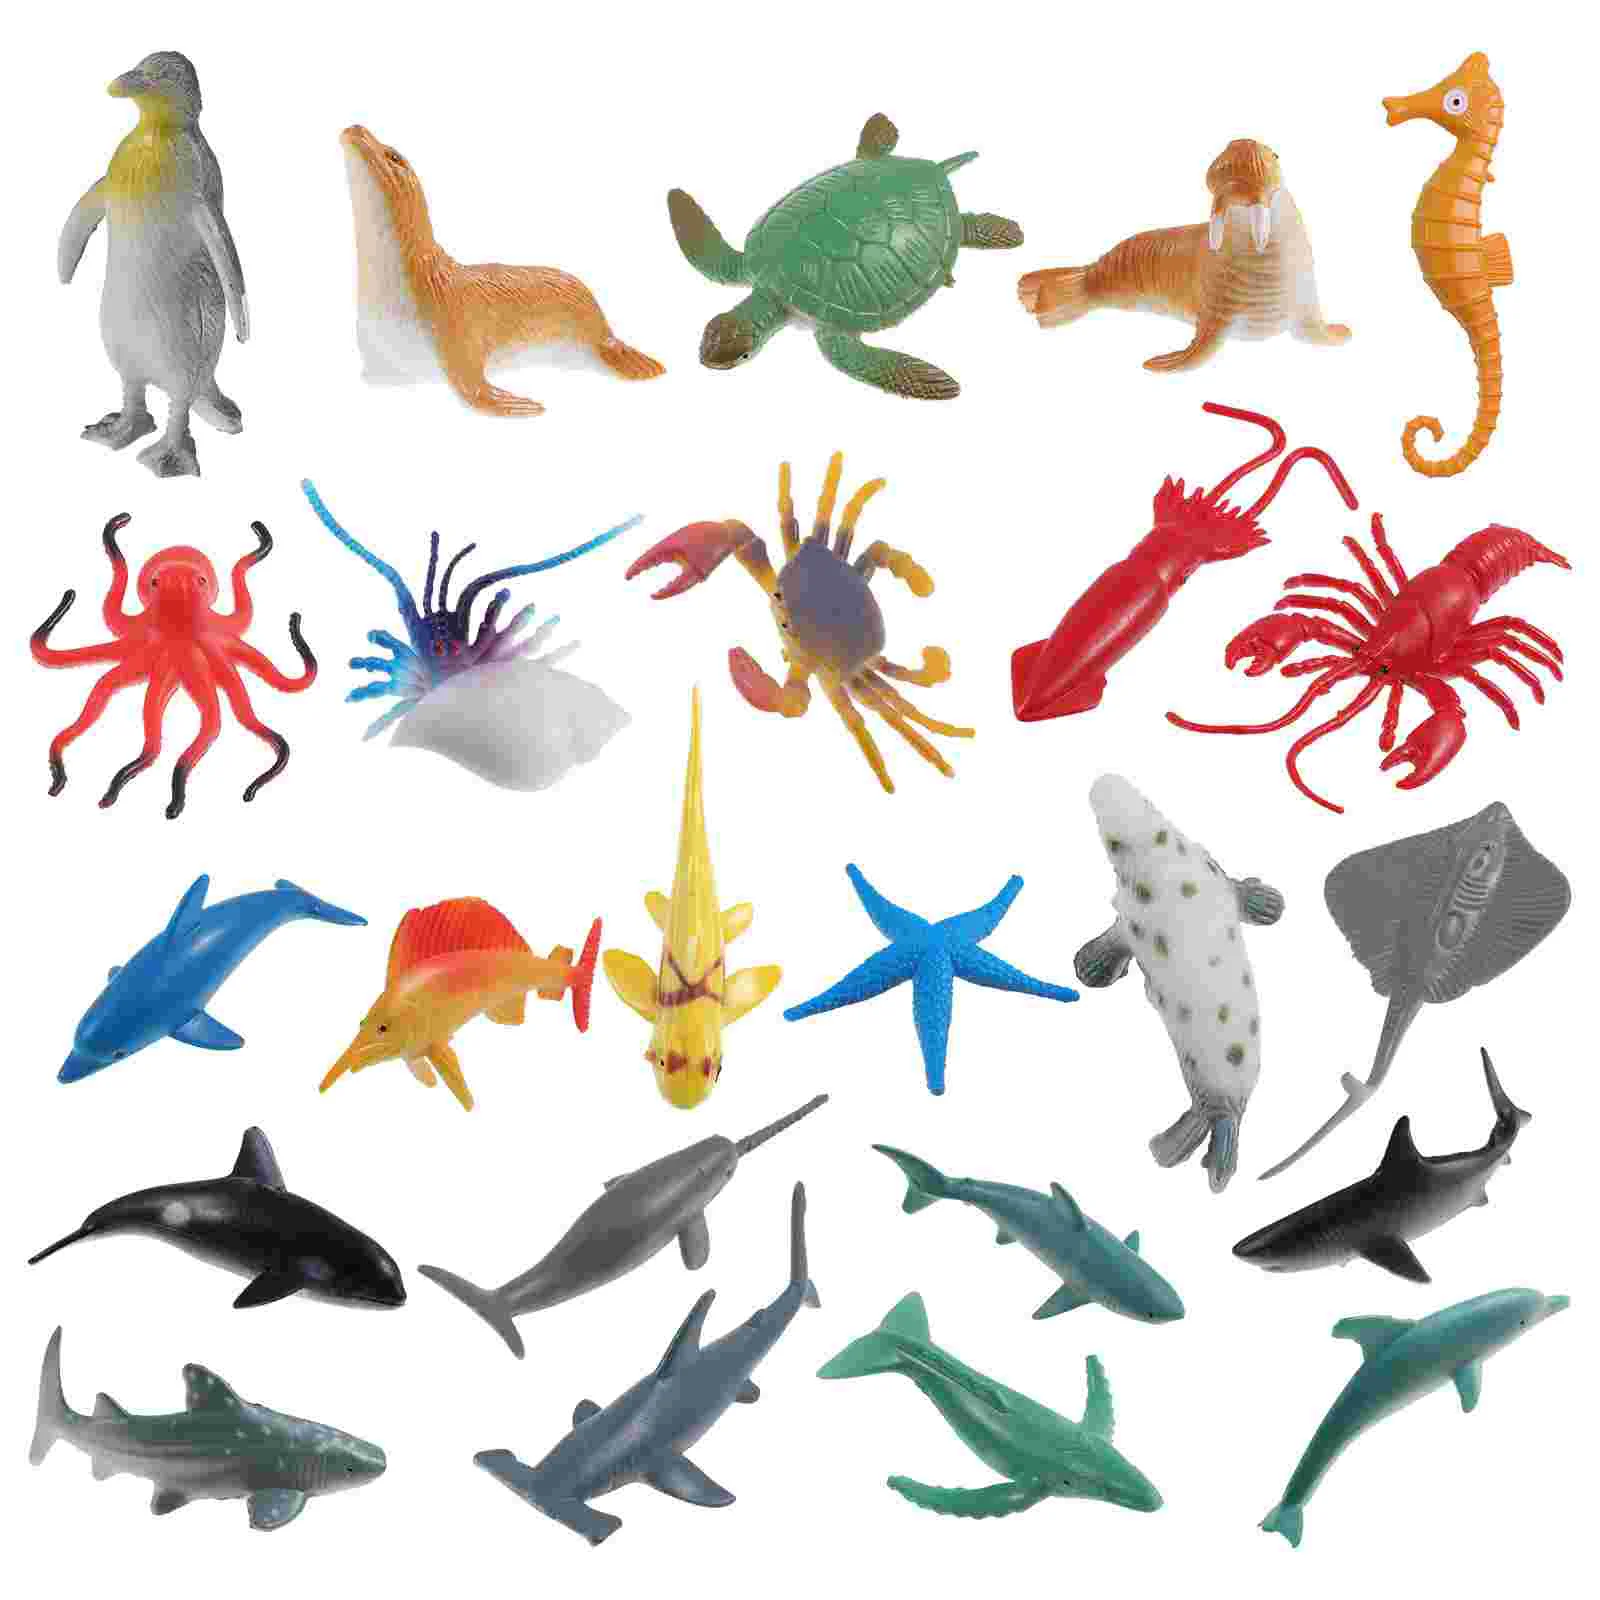 

Mini Creature Figures Sea Animals Ocean Dolphin Toy Turtle Figurine Figurines Toys Set Plastic Number Realisitic Marine